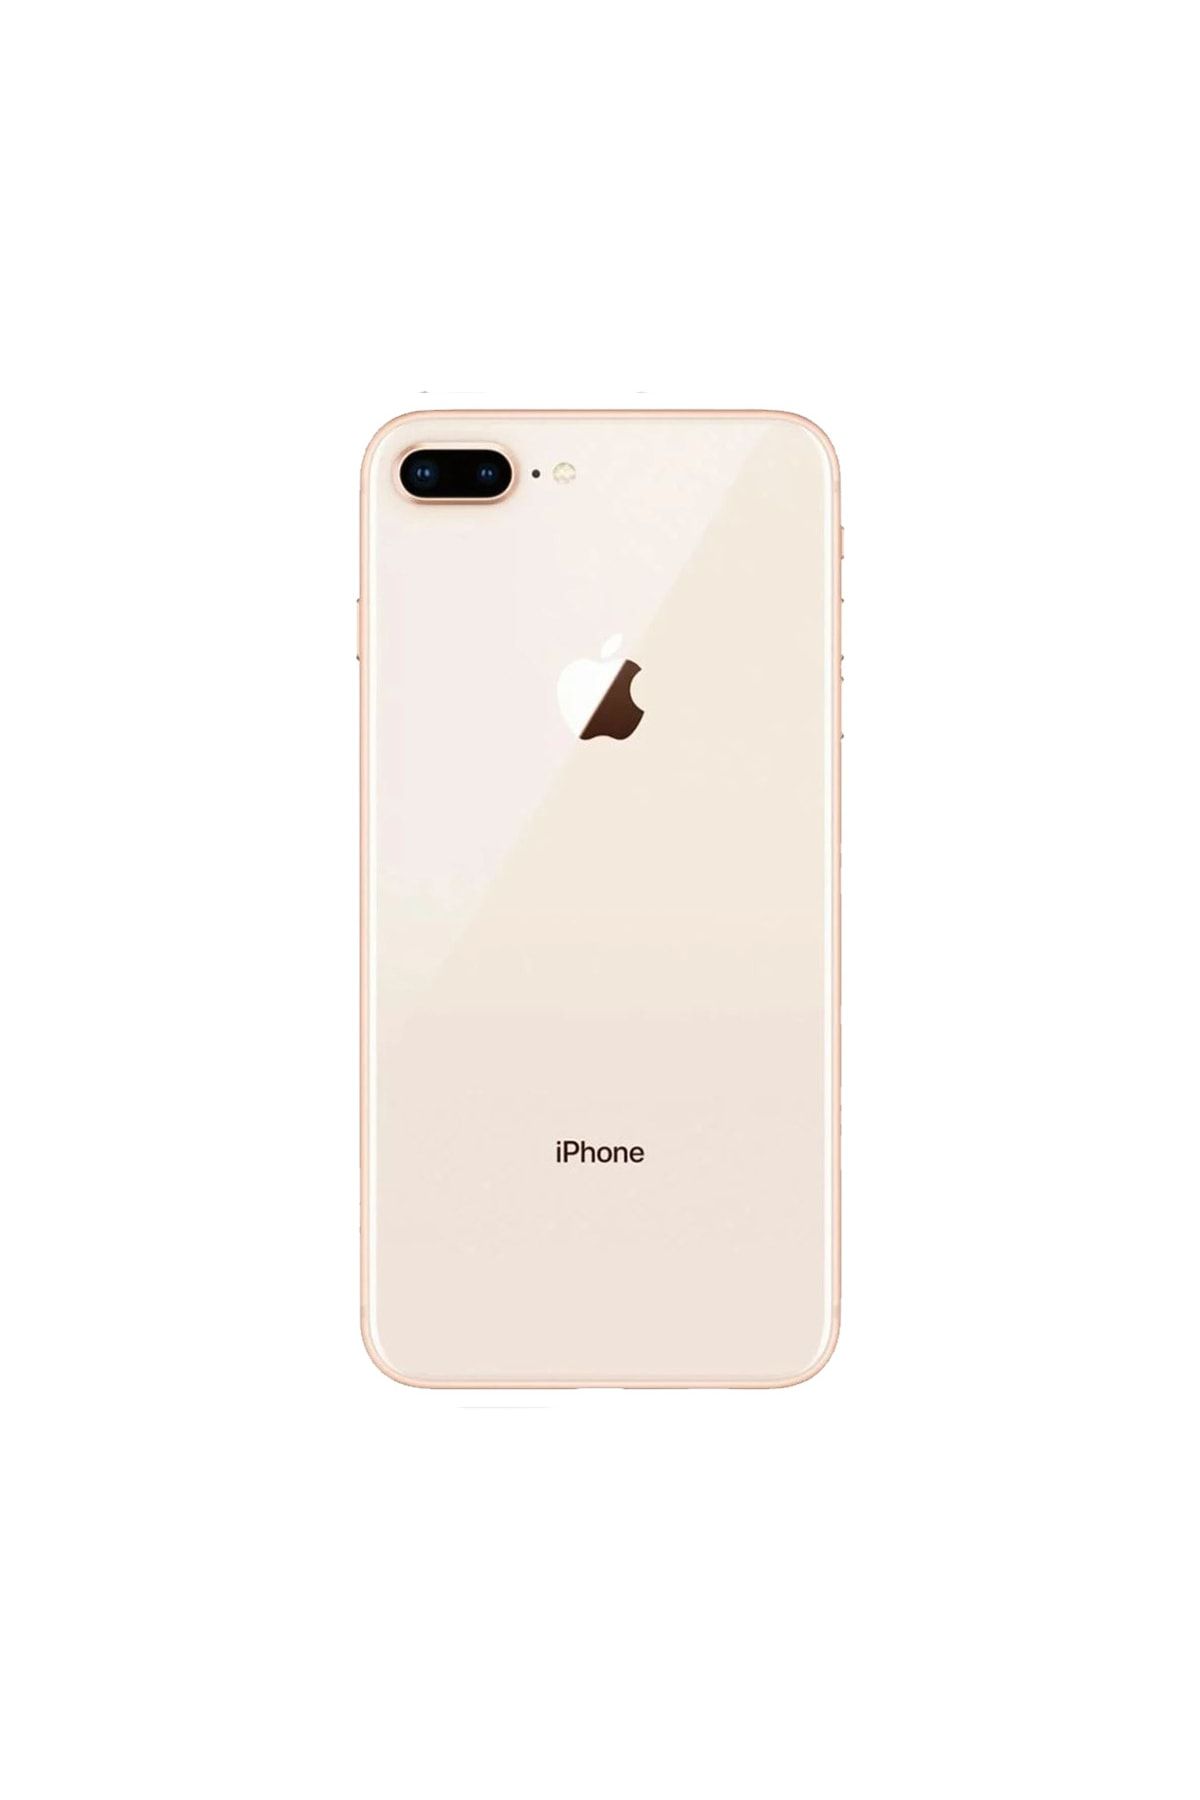 Apple Yenilenmiş iPhone 8 Plus 64 GB Altın Cep Telefonu (12 Ay Garantili) - B Kalite